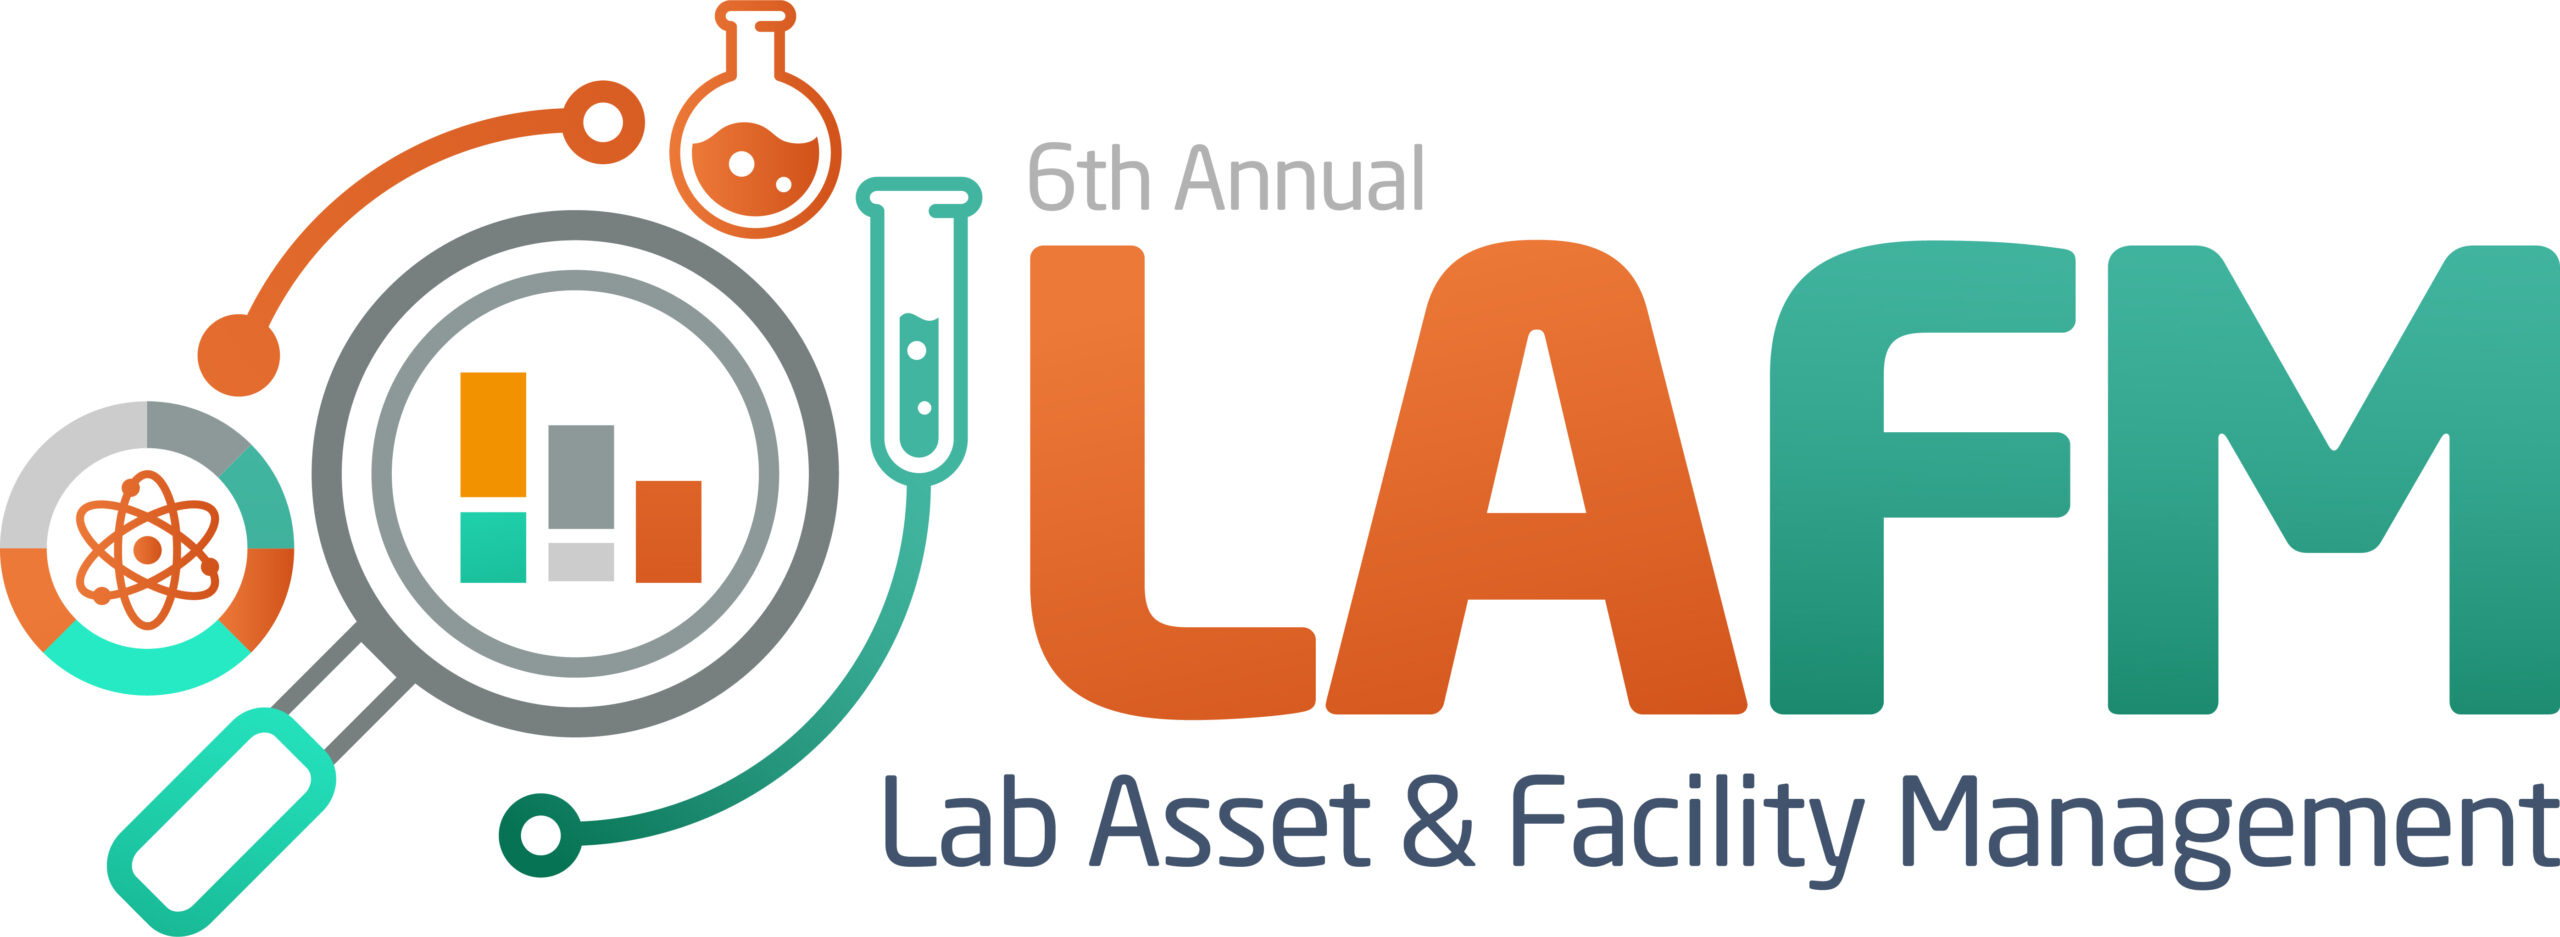 6th LAFM Summit logo